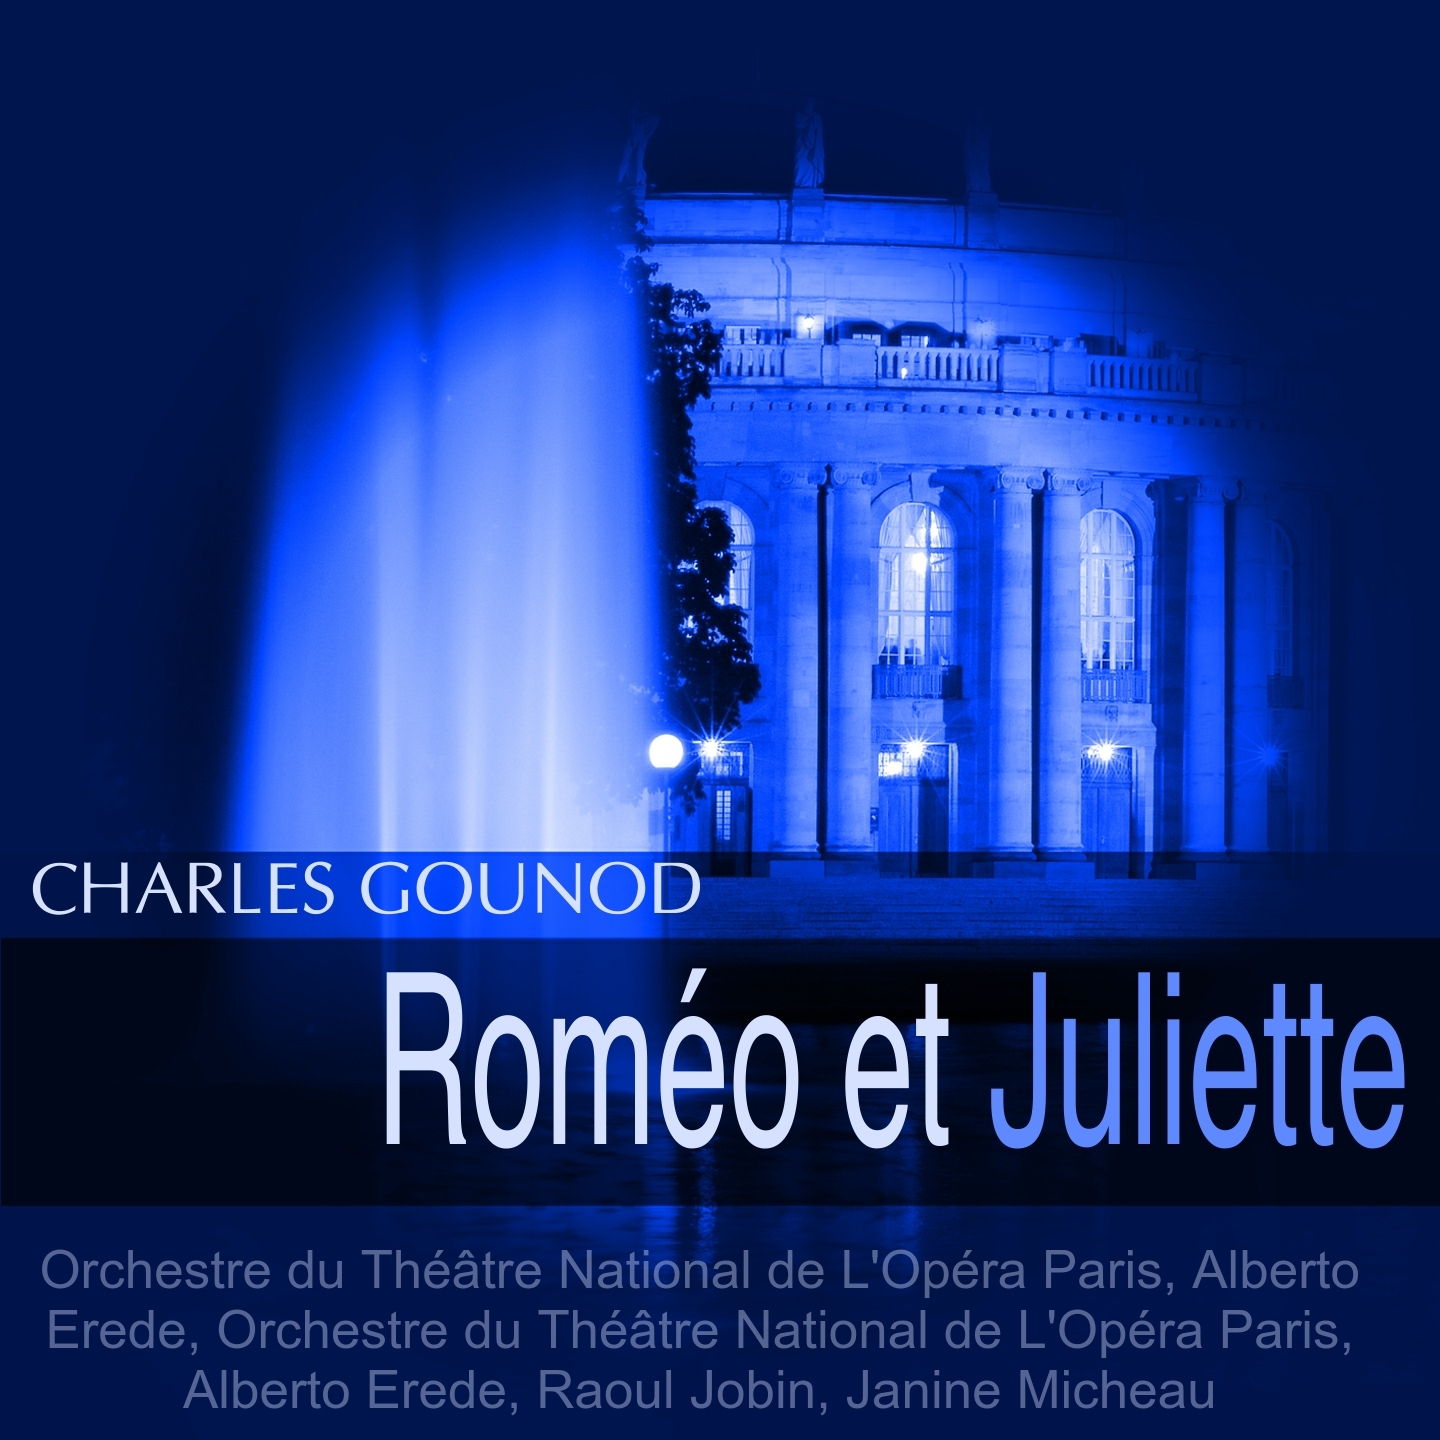 Rome o et Juliette, Act I: " Allons! Jeunes gens! Allons! Belle dames!" Capulet